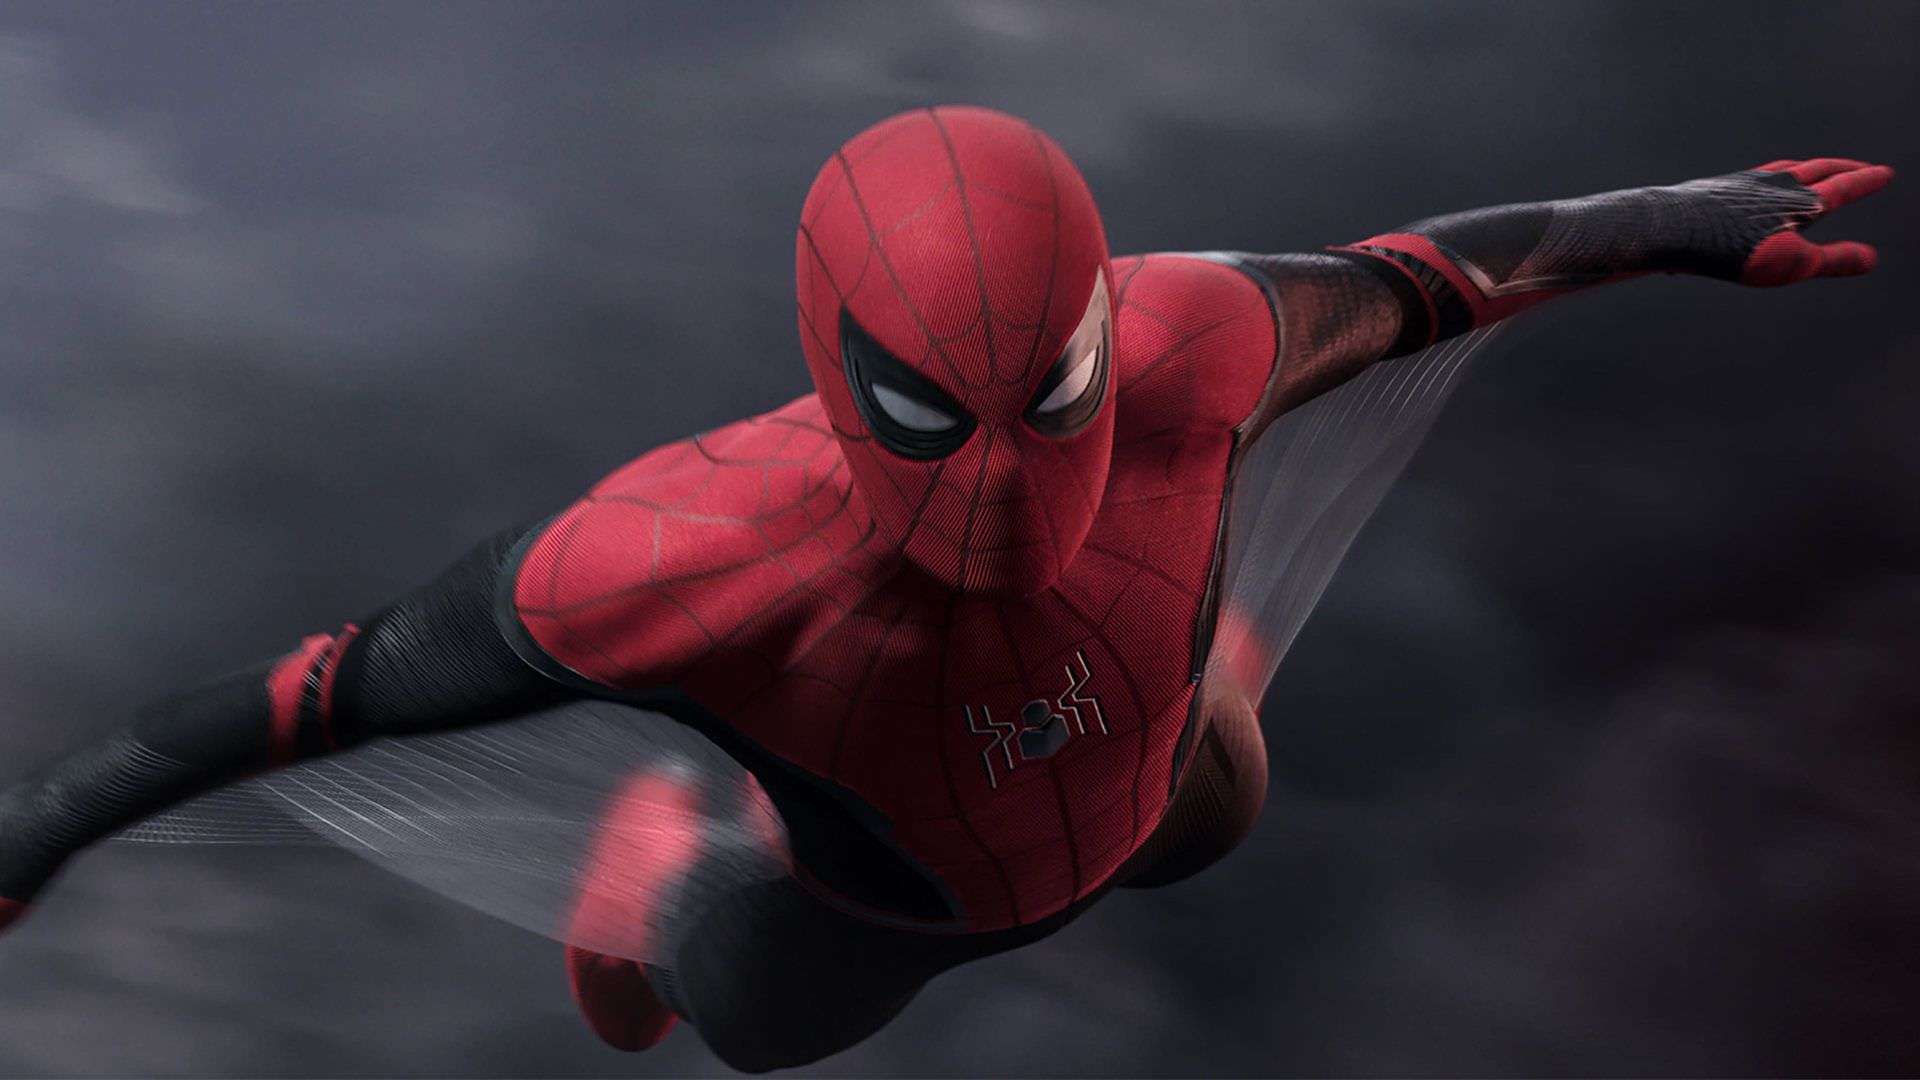 تام هالند در نقش مرد عنکبوتی در حال پرواز کردن در فیلم Spider-Man: Far From Home